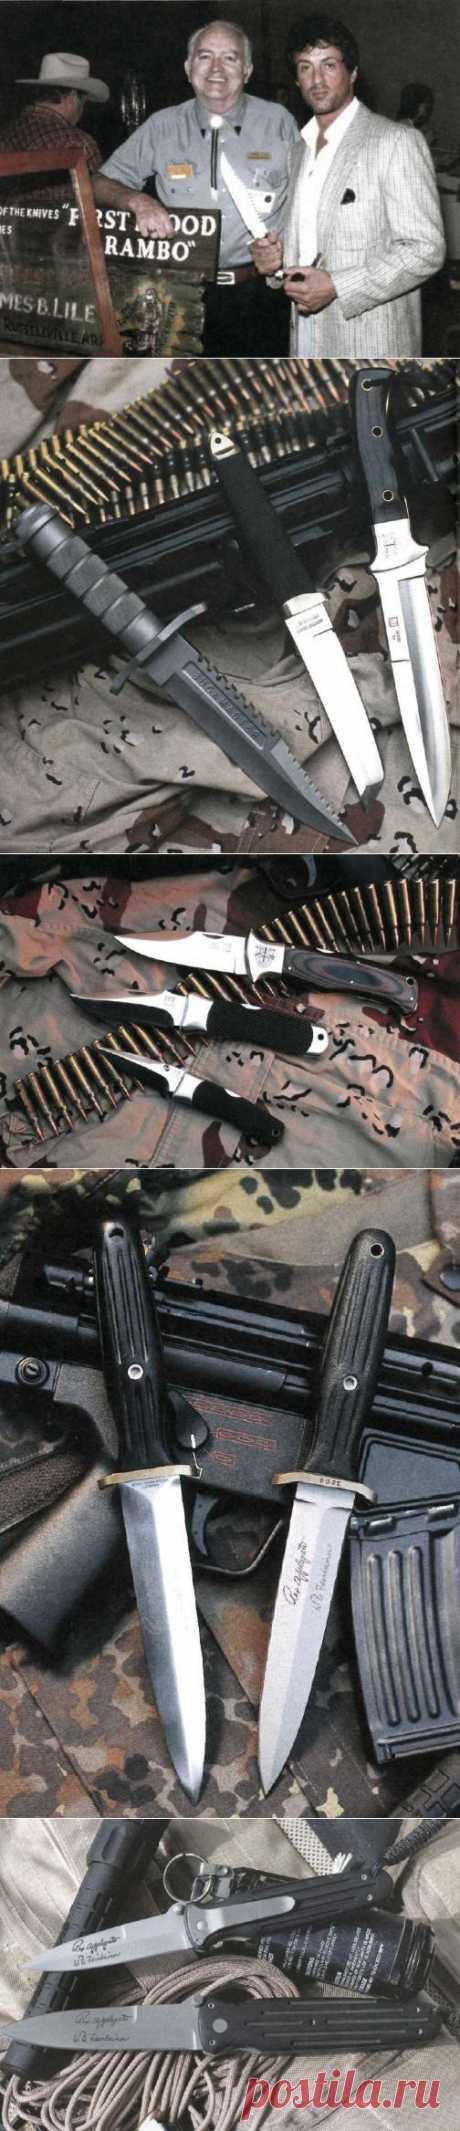 Боевые ножи - Энциклопедия оружия